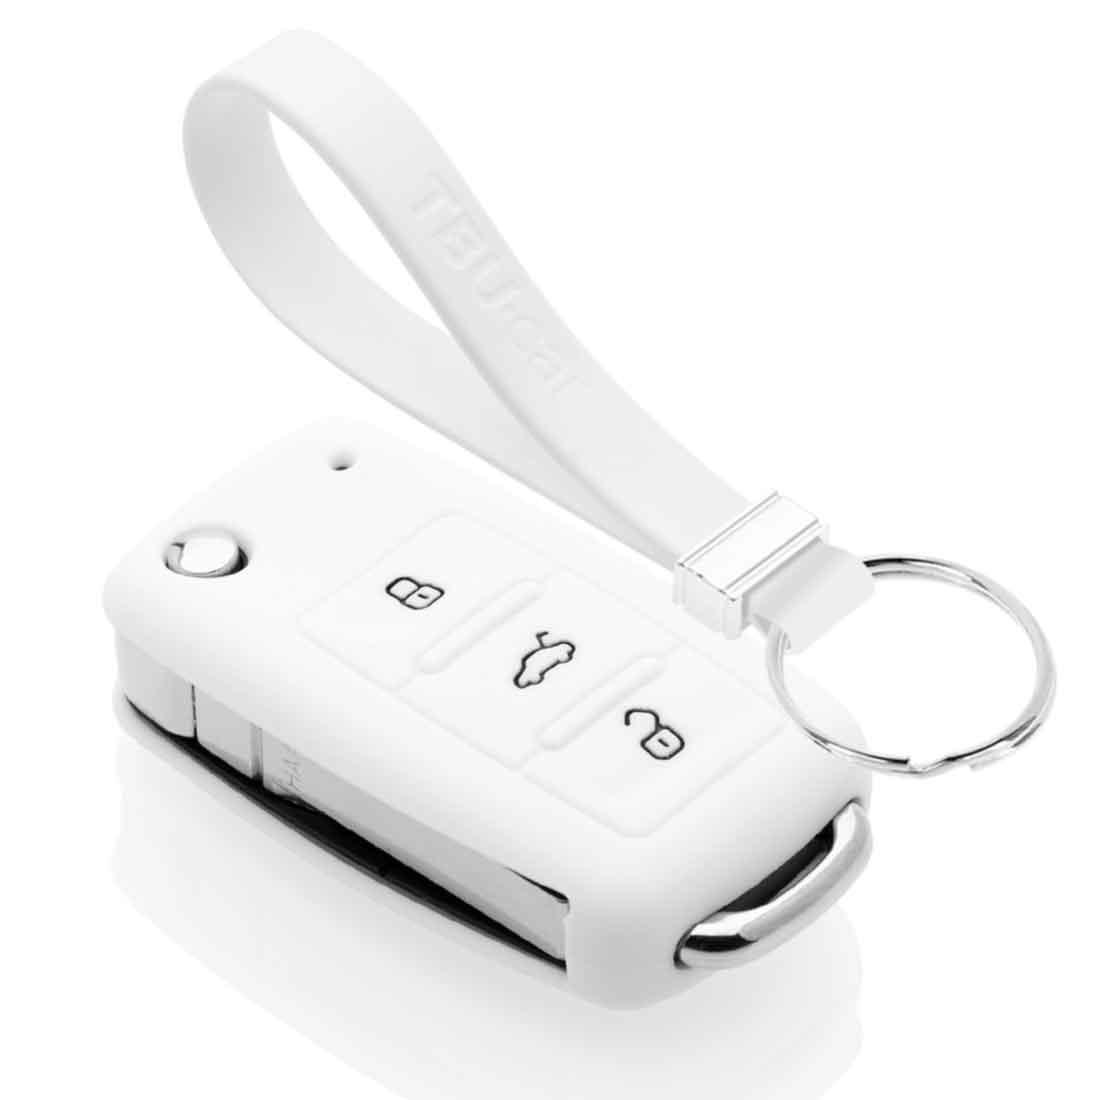 Für Autoschlüsseletui, Premium Soft Tpu Schutzhülle Schlüsselhülle Für A1  A3 A6 Q2 Q3 Q7 Tt Tts R8 S3 S6 Rs3 Rs6 Autoschlüssel, Shoppen Sie Die  Neuesten Trends